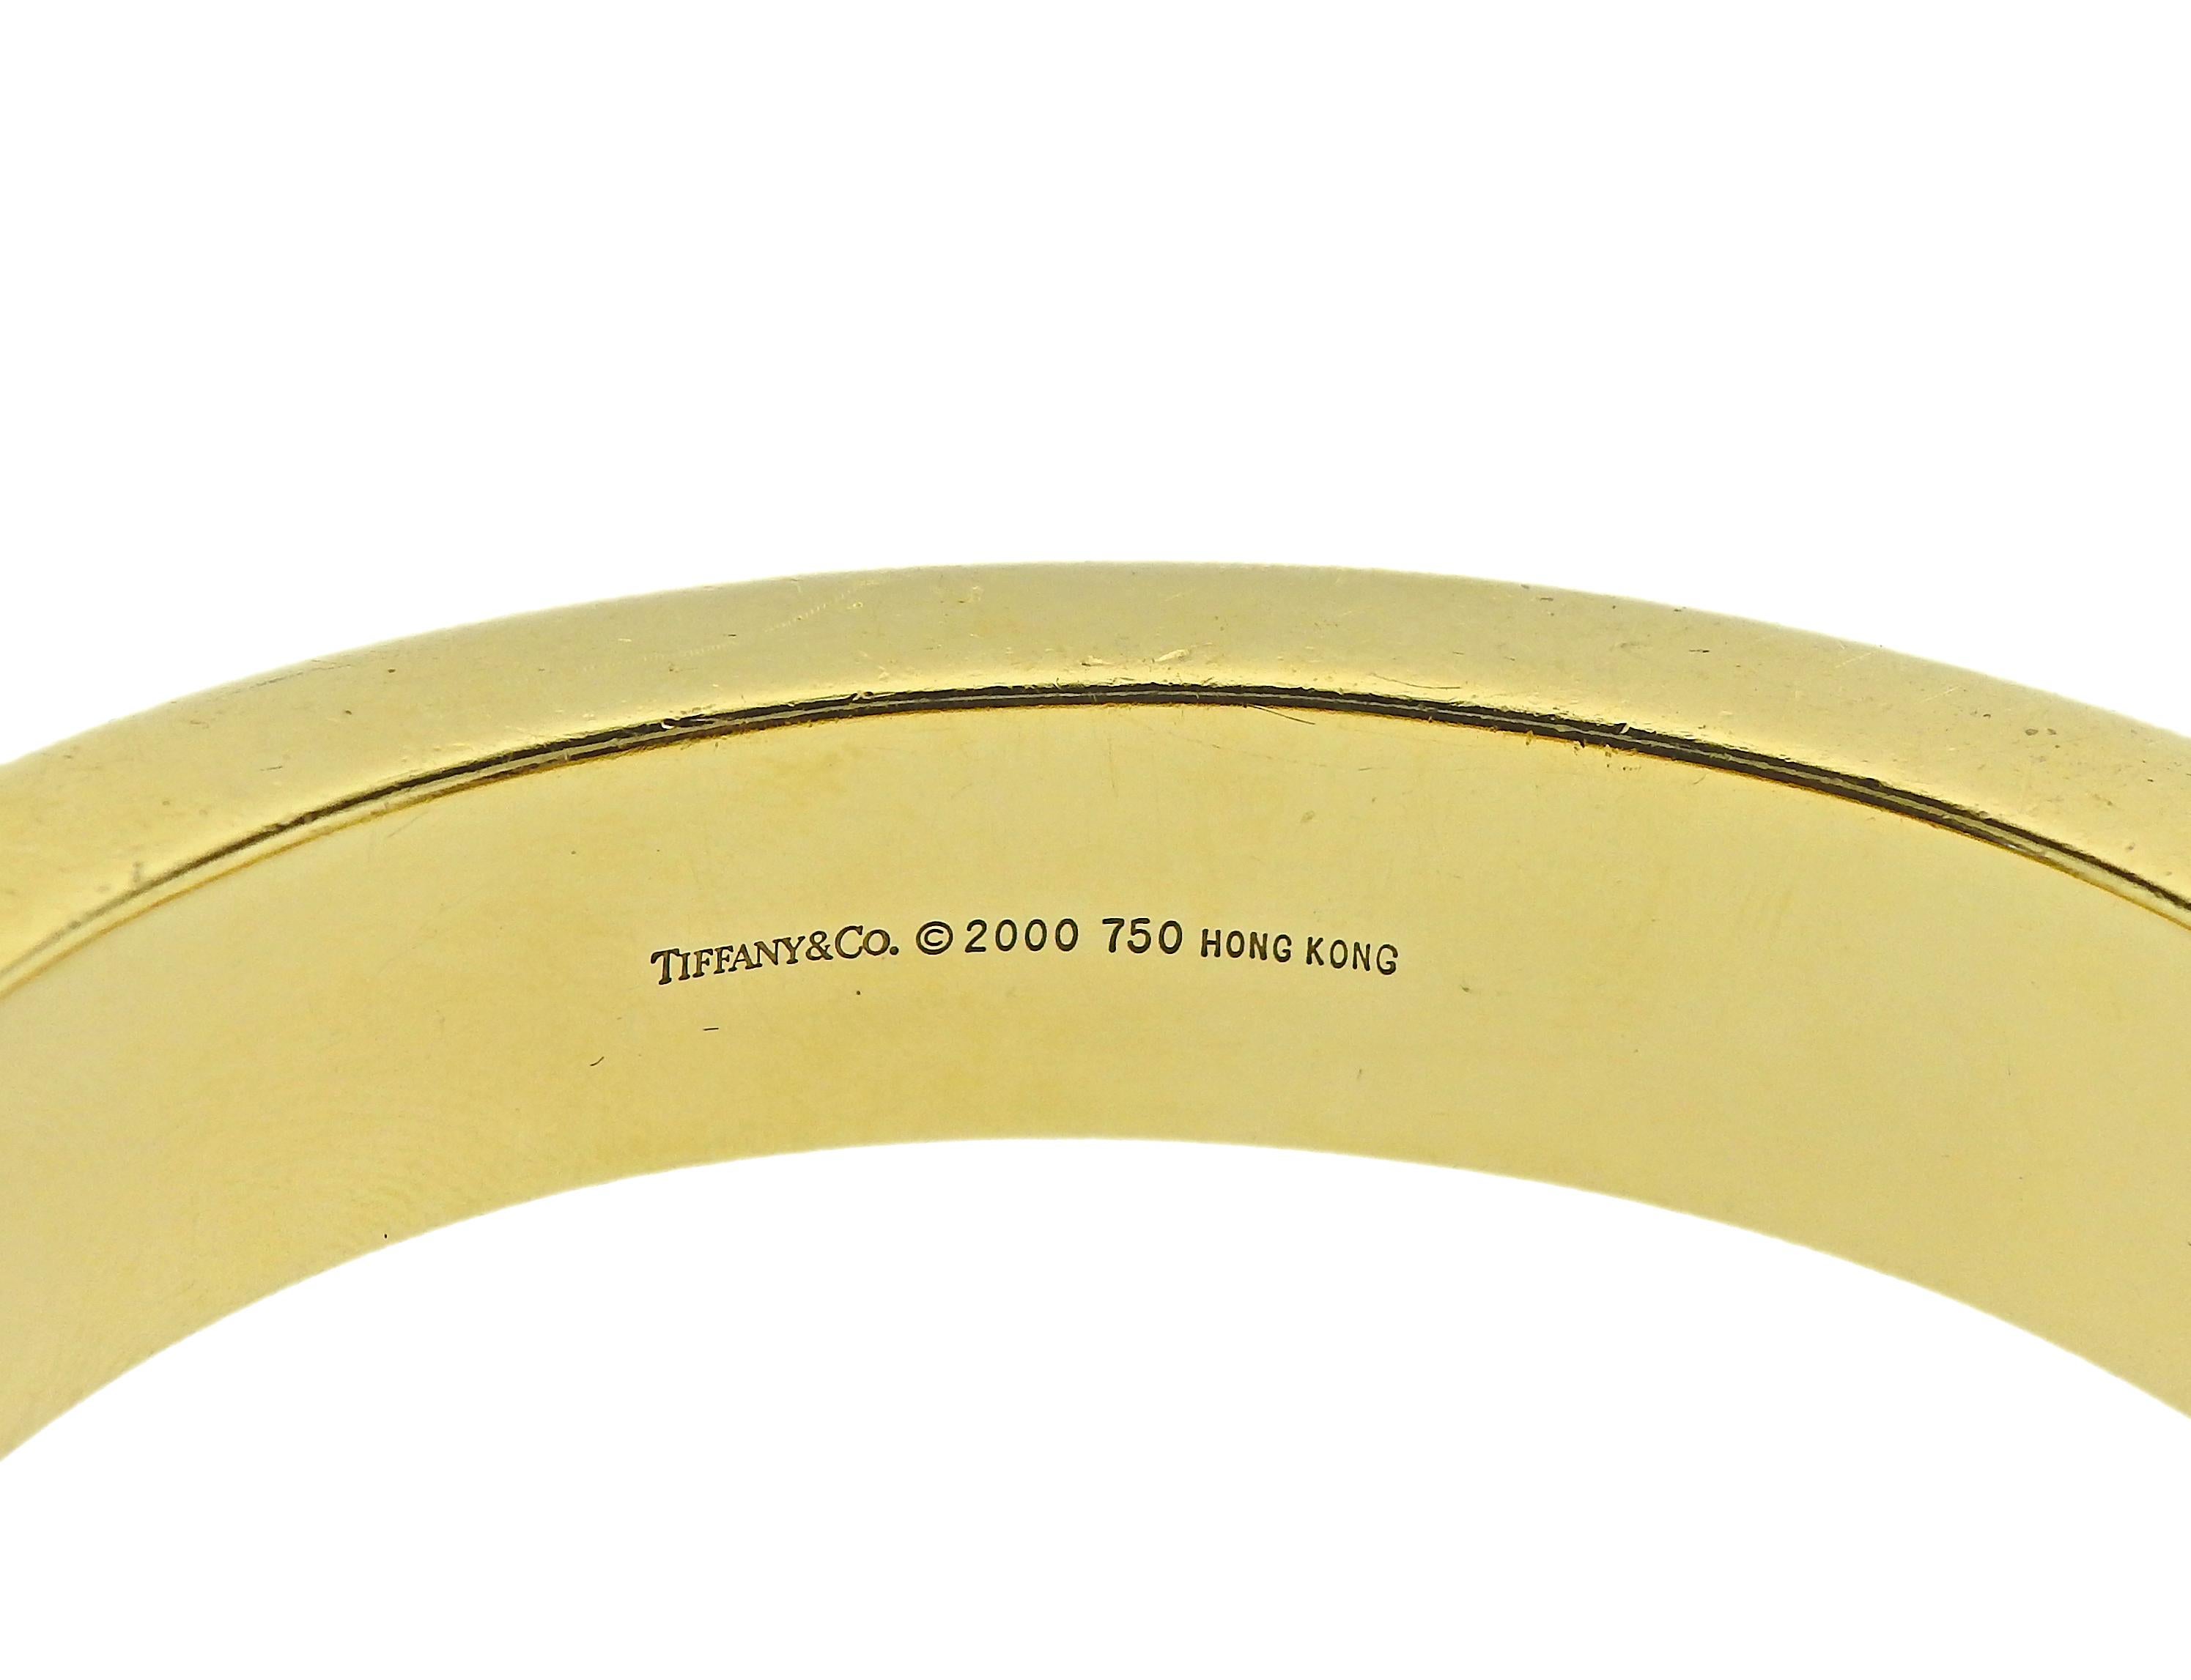 Bracelet en or 18 carats de Tiffany & Co, avec incrustation de nacre et de jade noir dans un motif zébré. Le bracelet s'adapte à un poignet d'environ 6,75